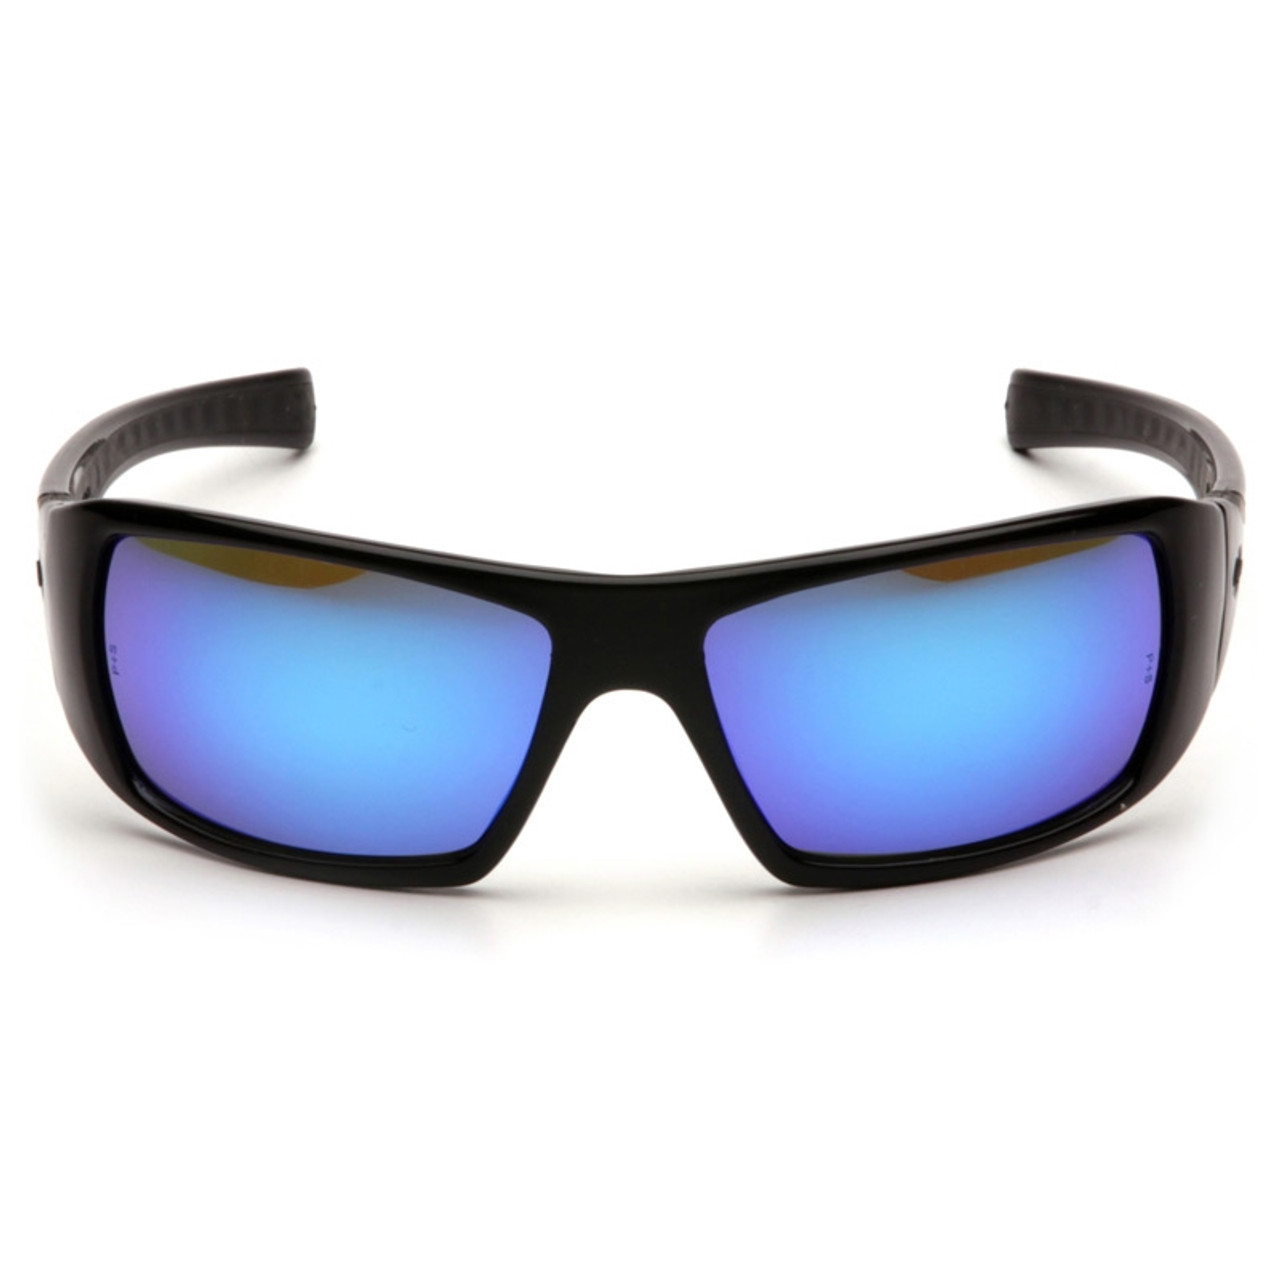 Очки айс. Очки Goliath Black Falcon. Blue Ice очки. Ultra Goliath очки. Очки зеркальные мужские ANSI Z87.1.